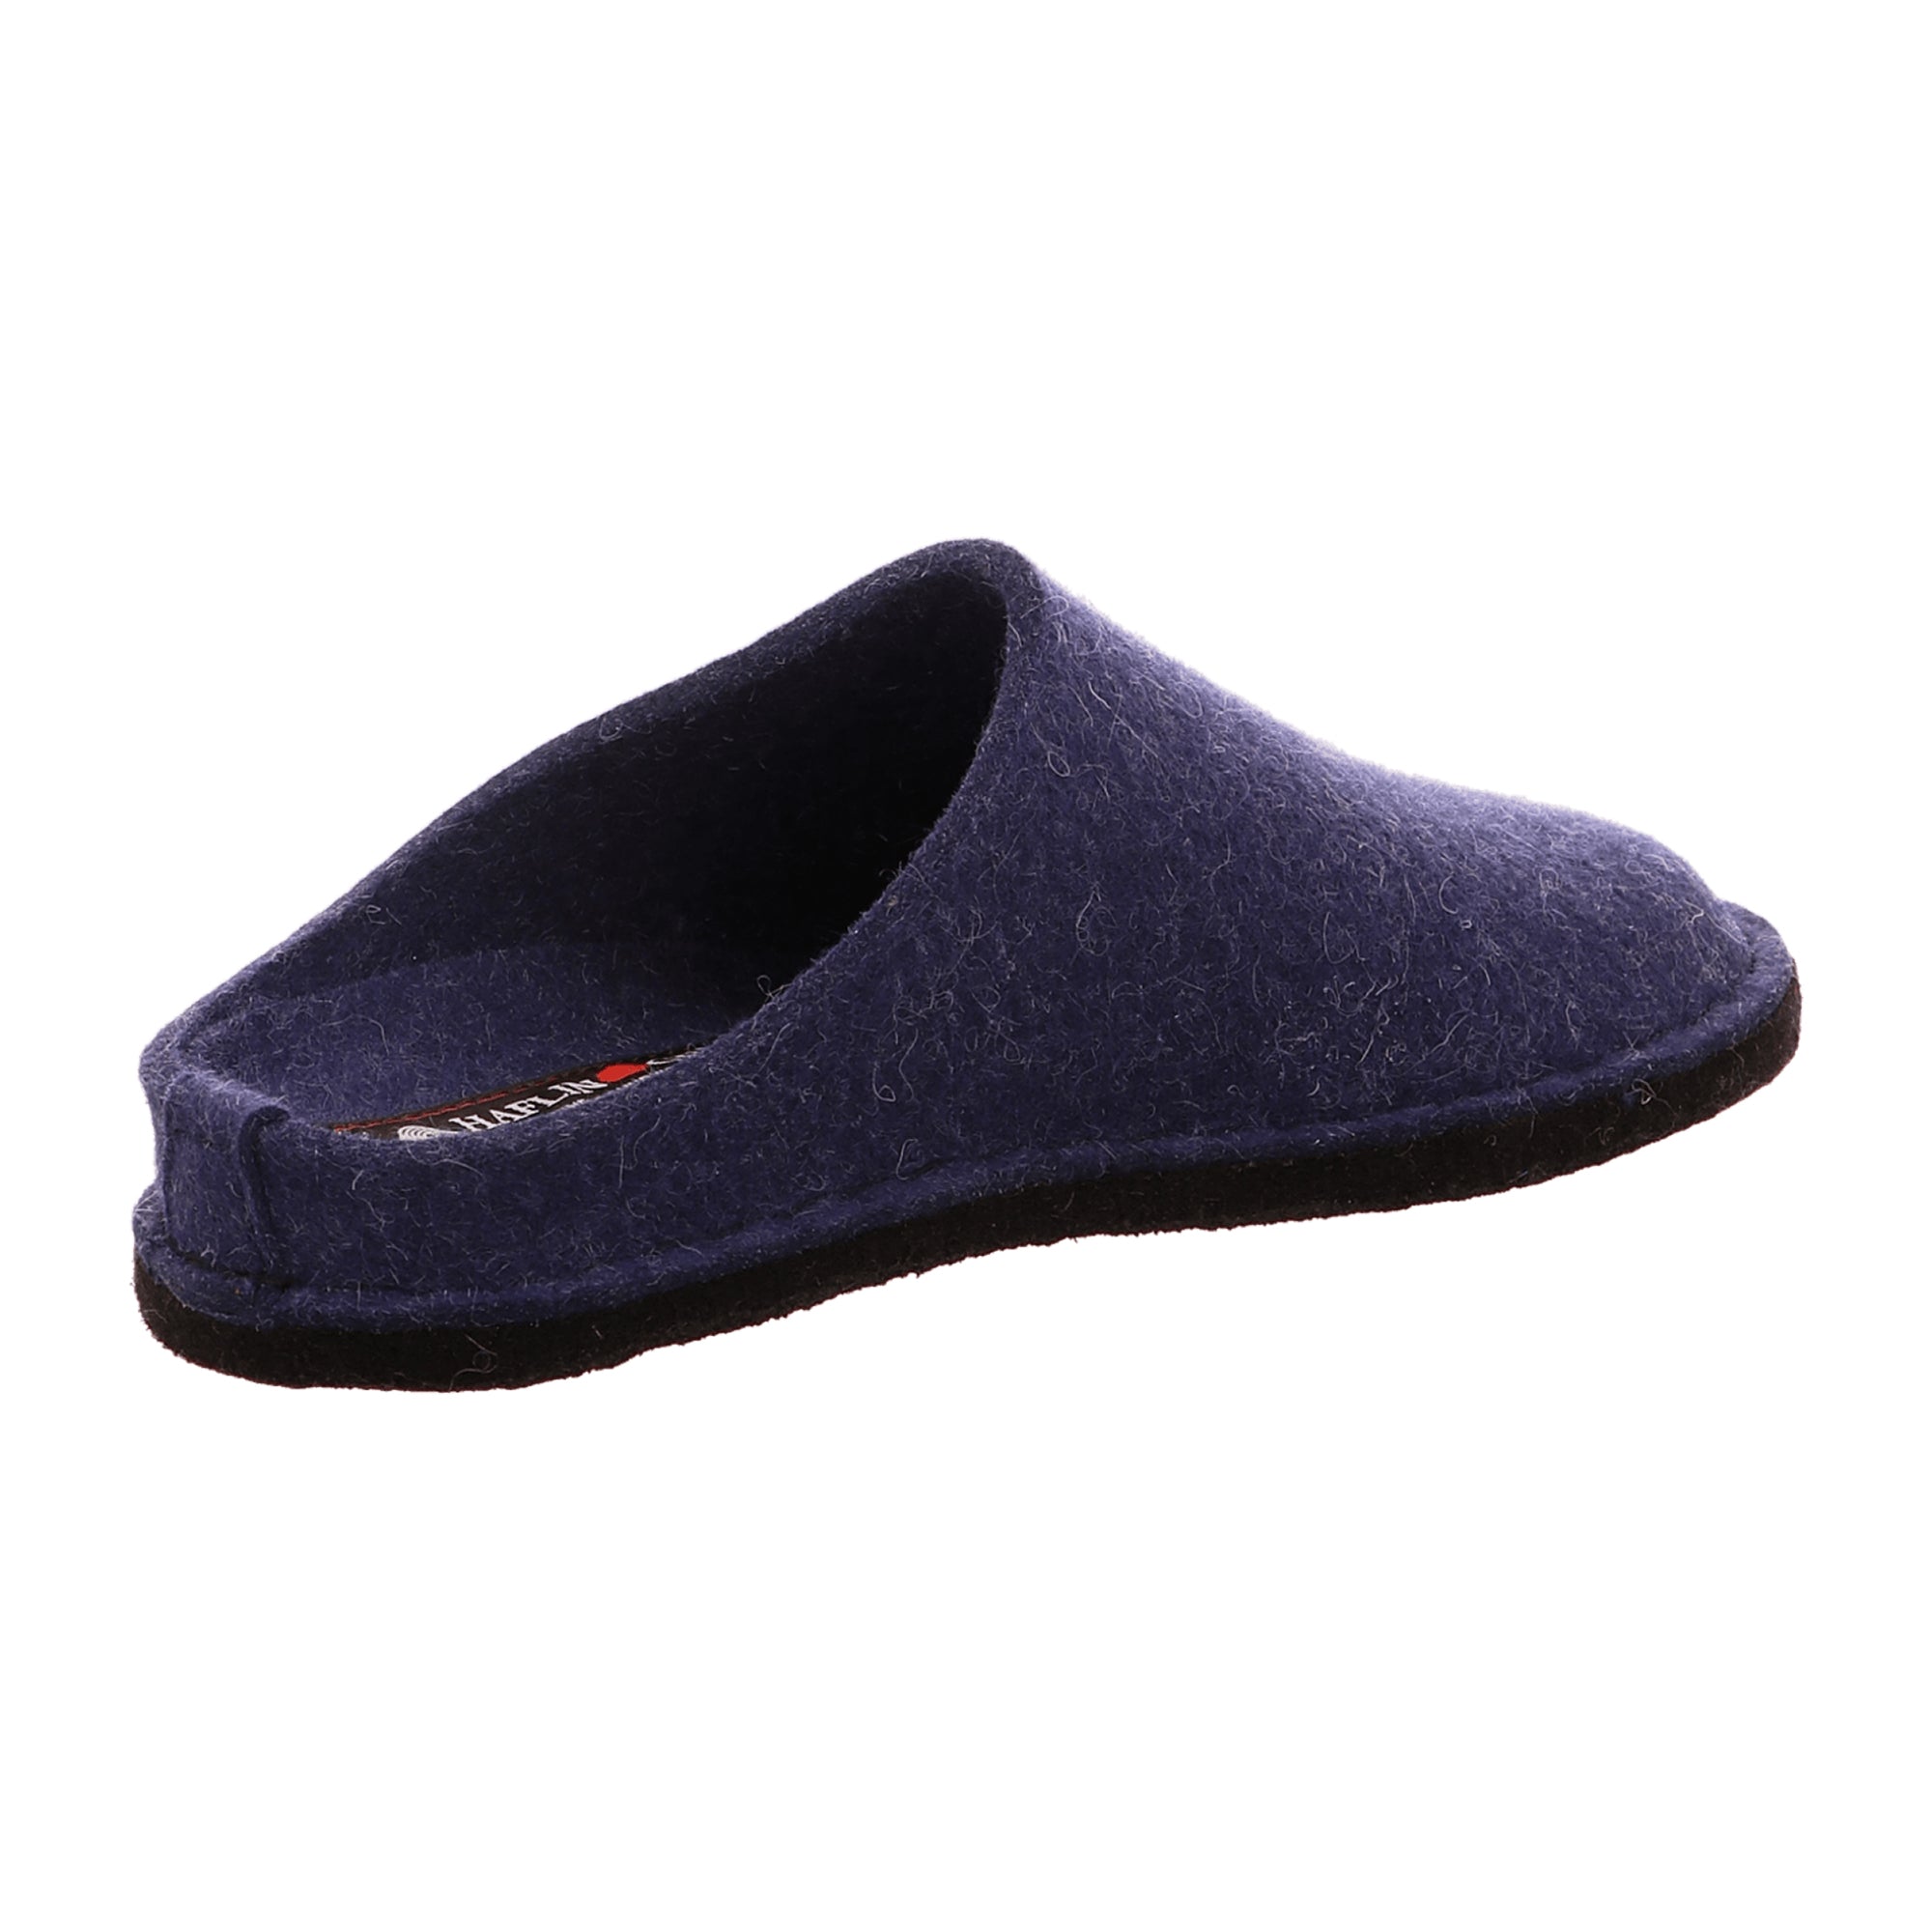 Haflinger Men's Slippers - Durable Comfort Style 311010/3062787, Blue